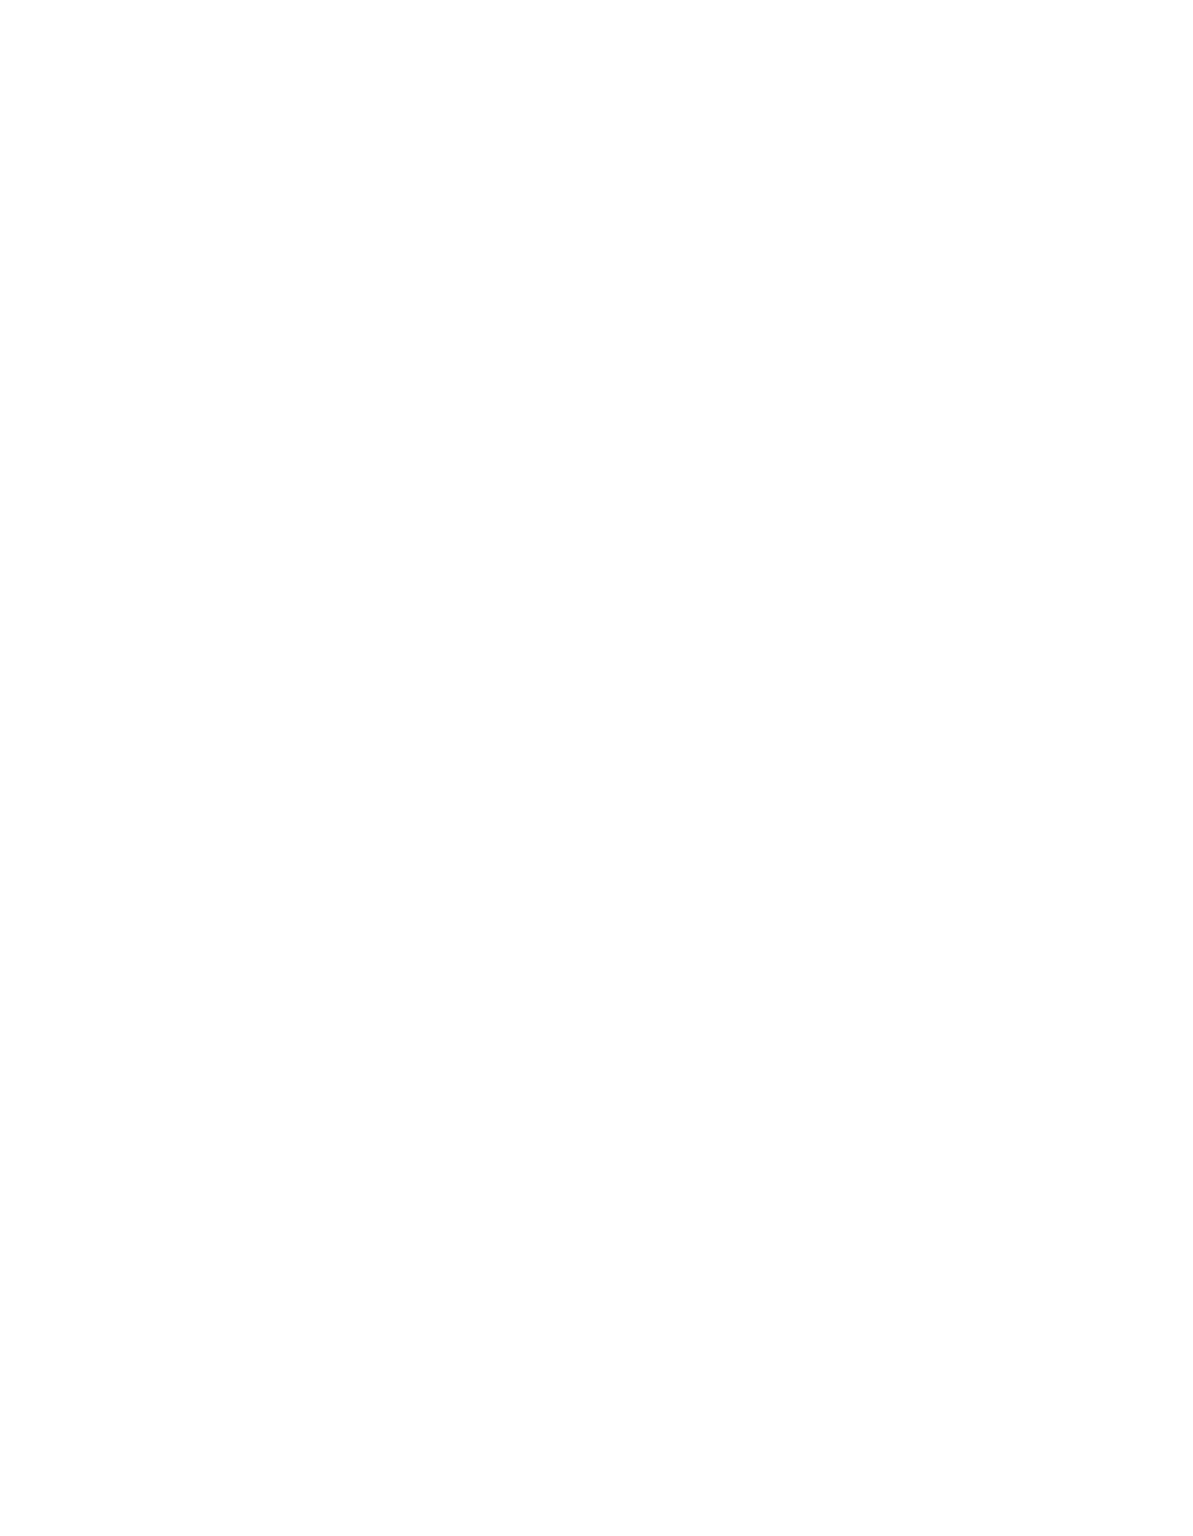 Emerge ETF Trust logo for dark backgrounds (transparent PNG)